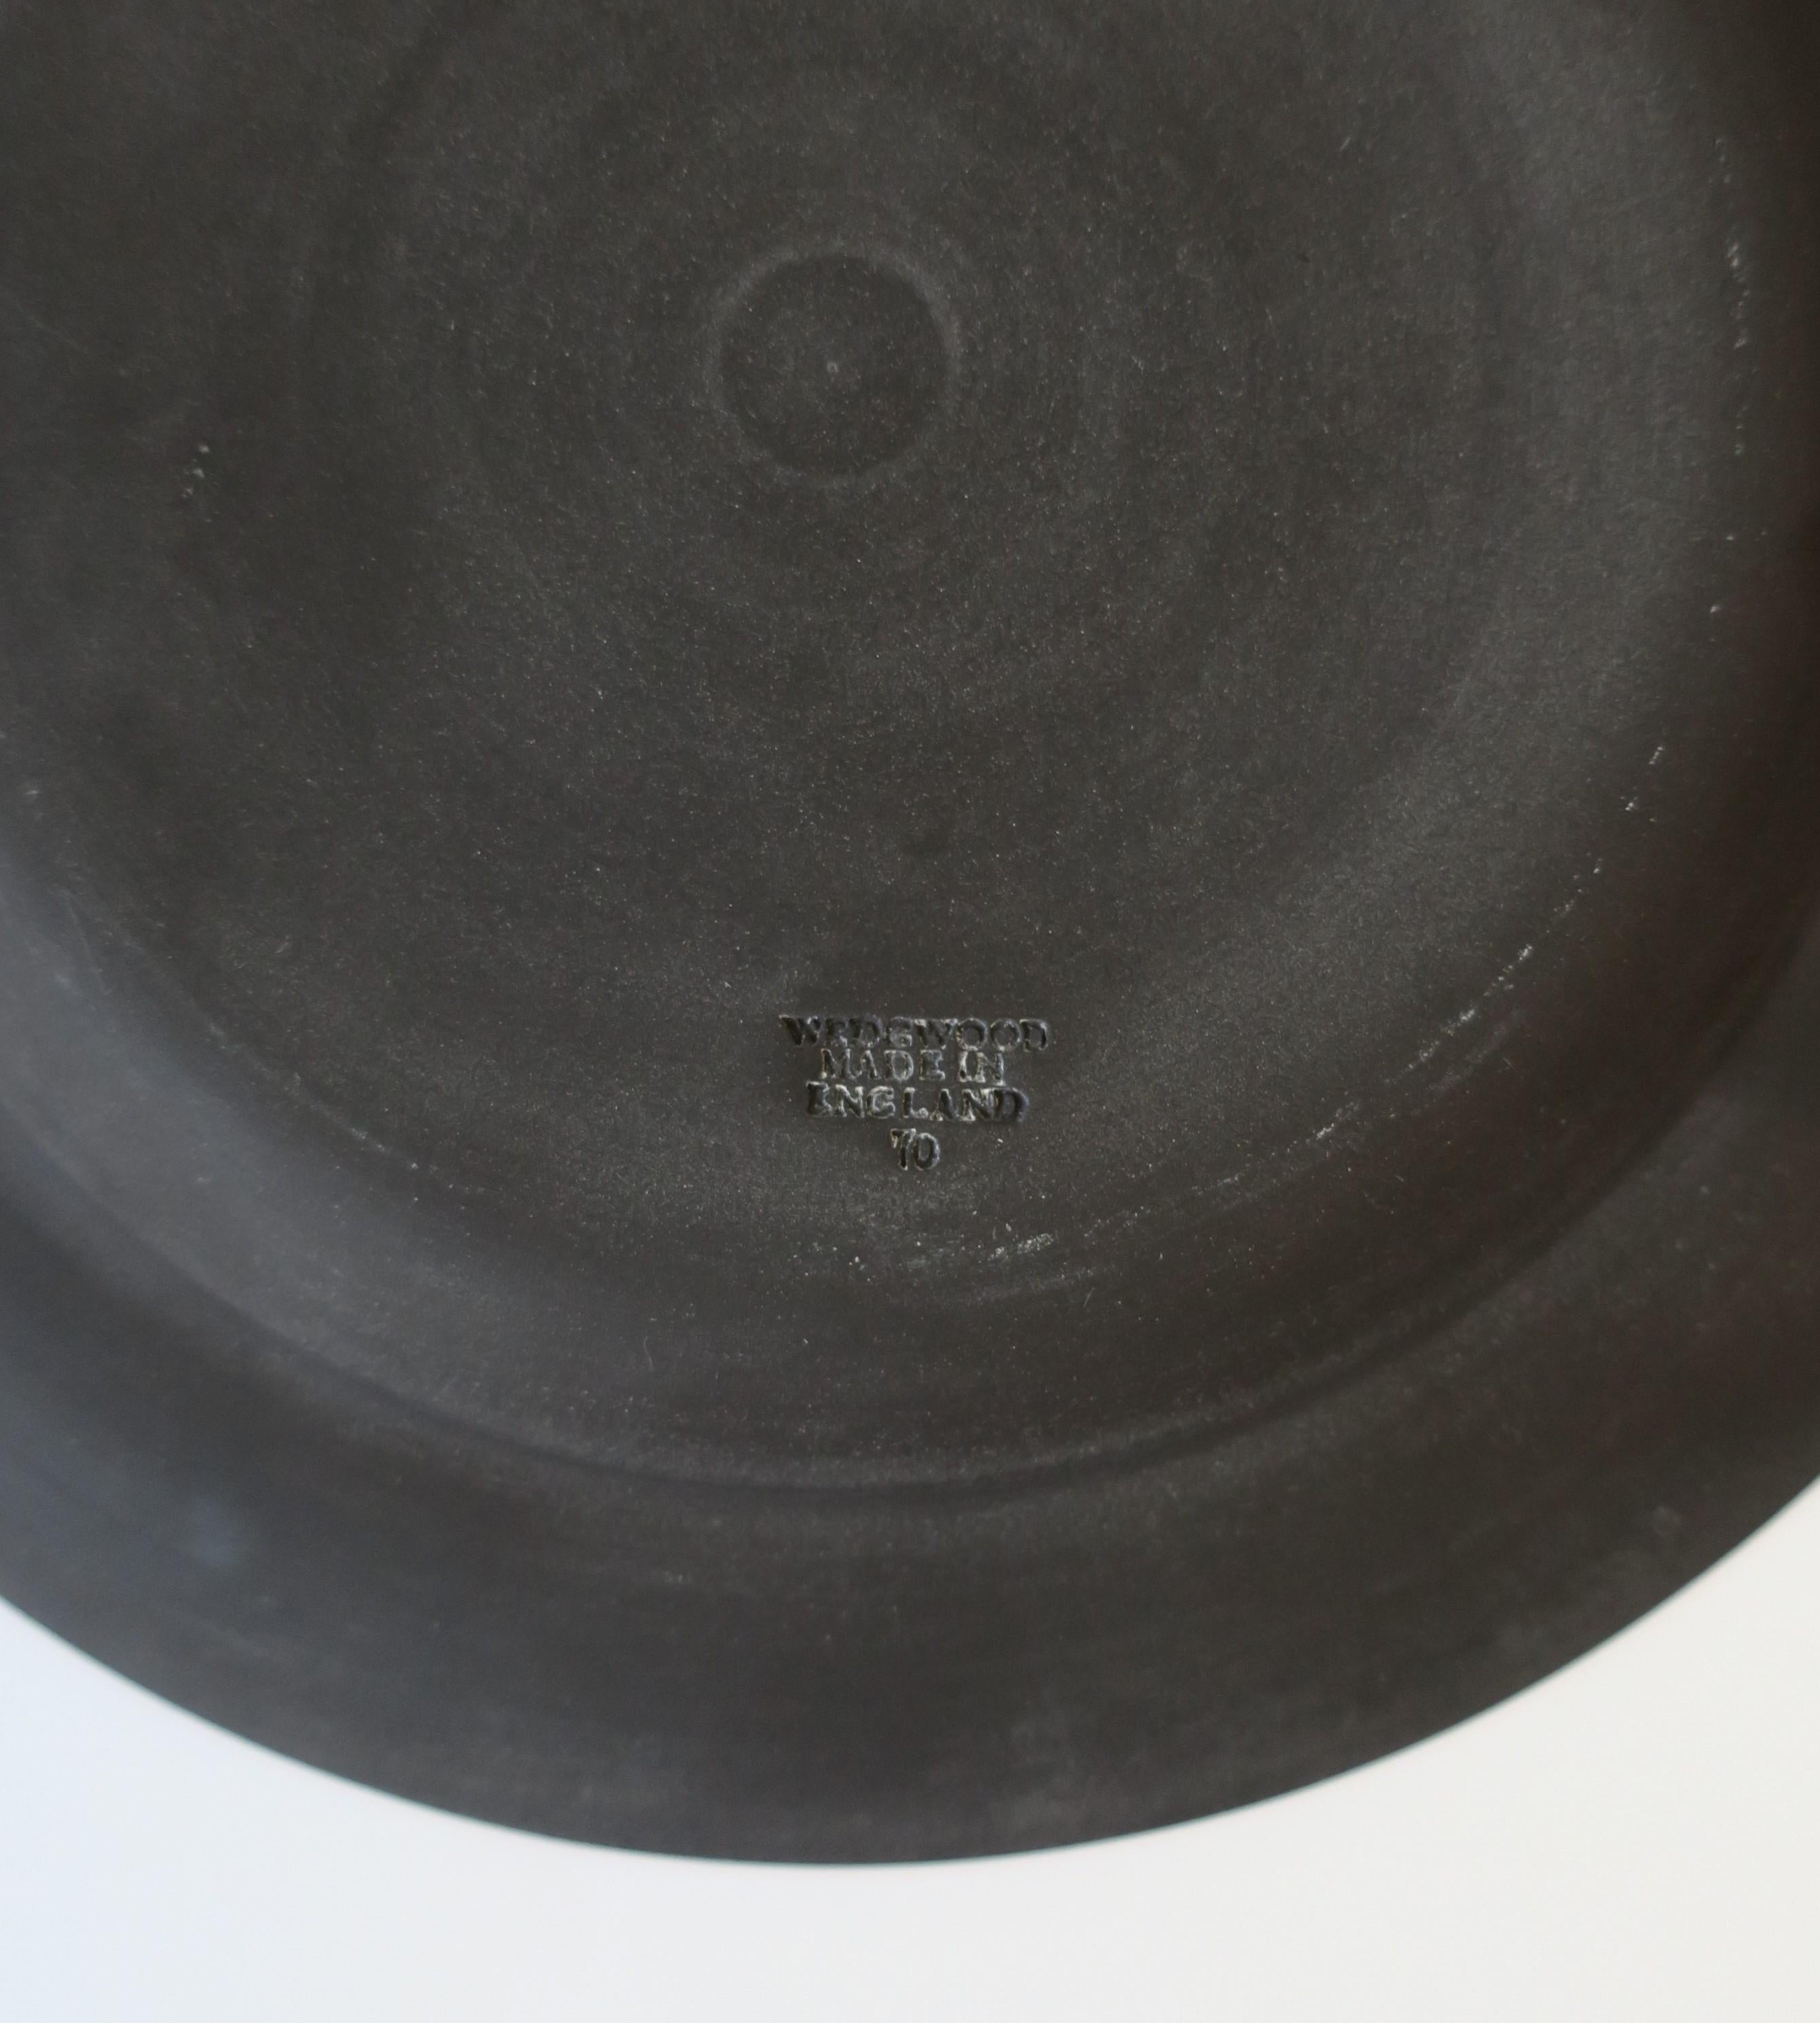 Ceramic Wedgwood English Matte Black Basalt Plates, Set of 4